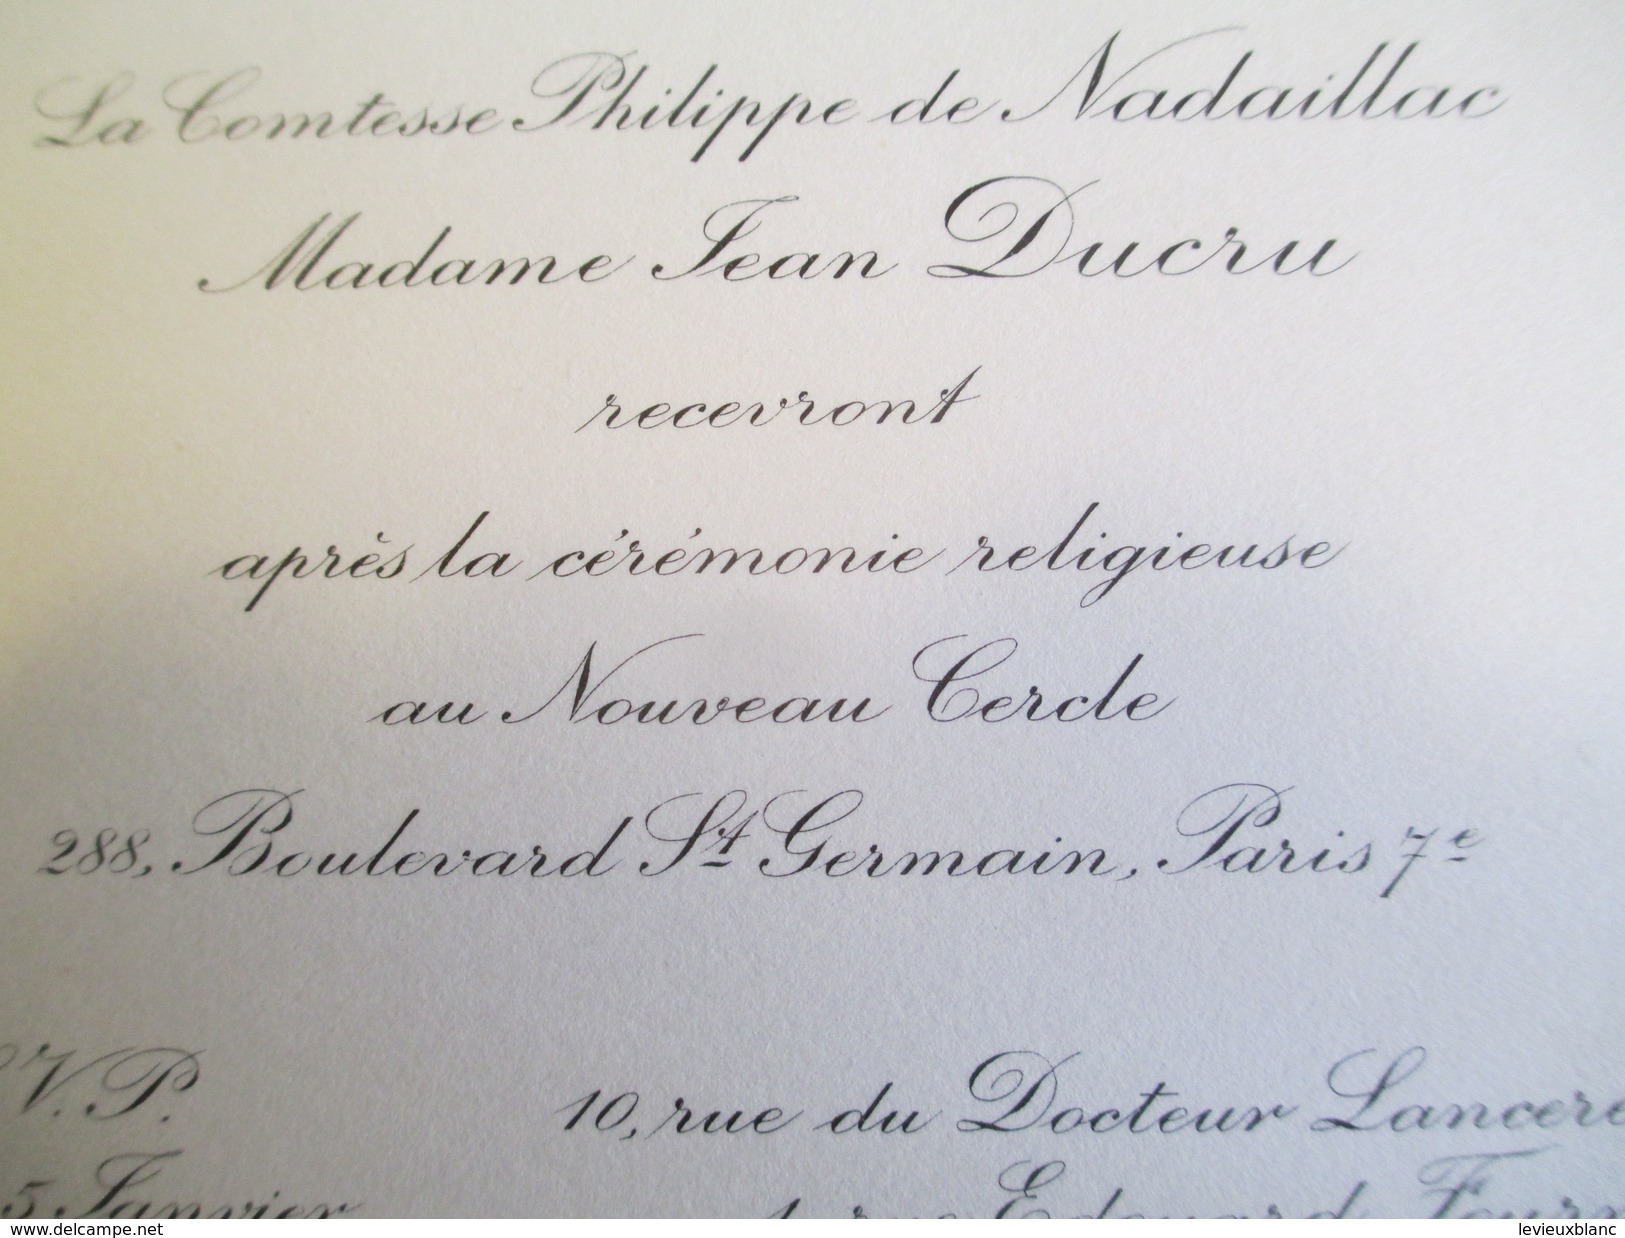 Carte D'Invitation / Comtesse Philippe De NADAILLAC Et Mme DUCRU /Nouveau Cercle/Paris/Années 70   FPM33 - Mariage